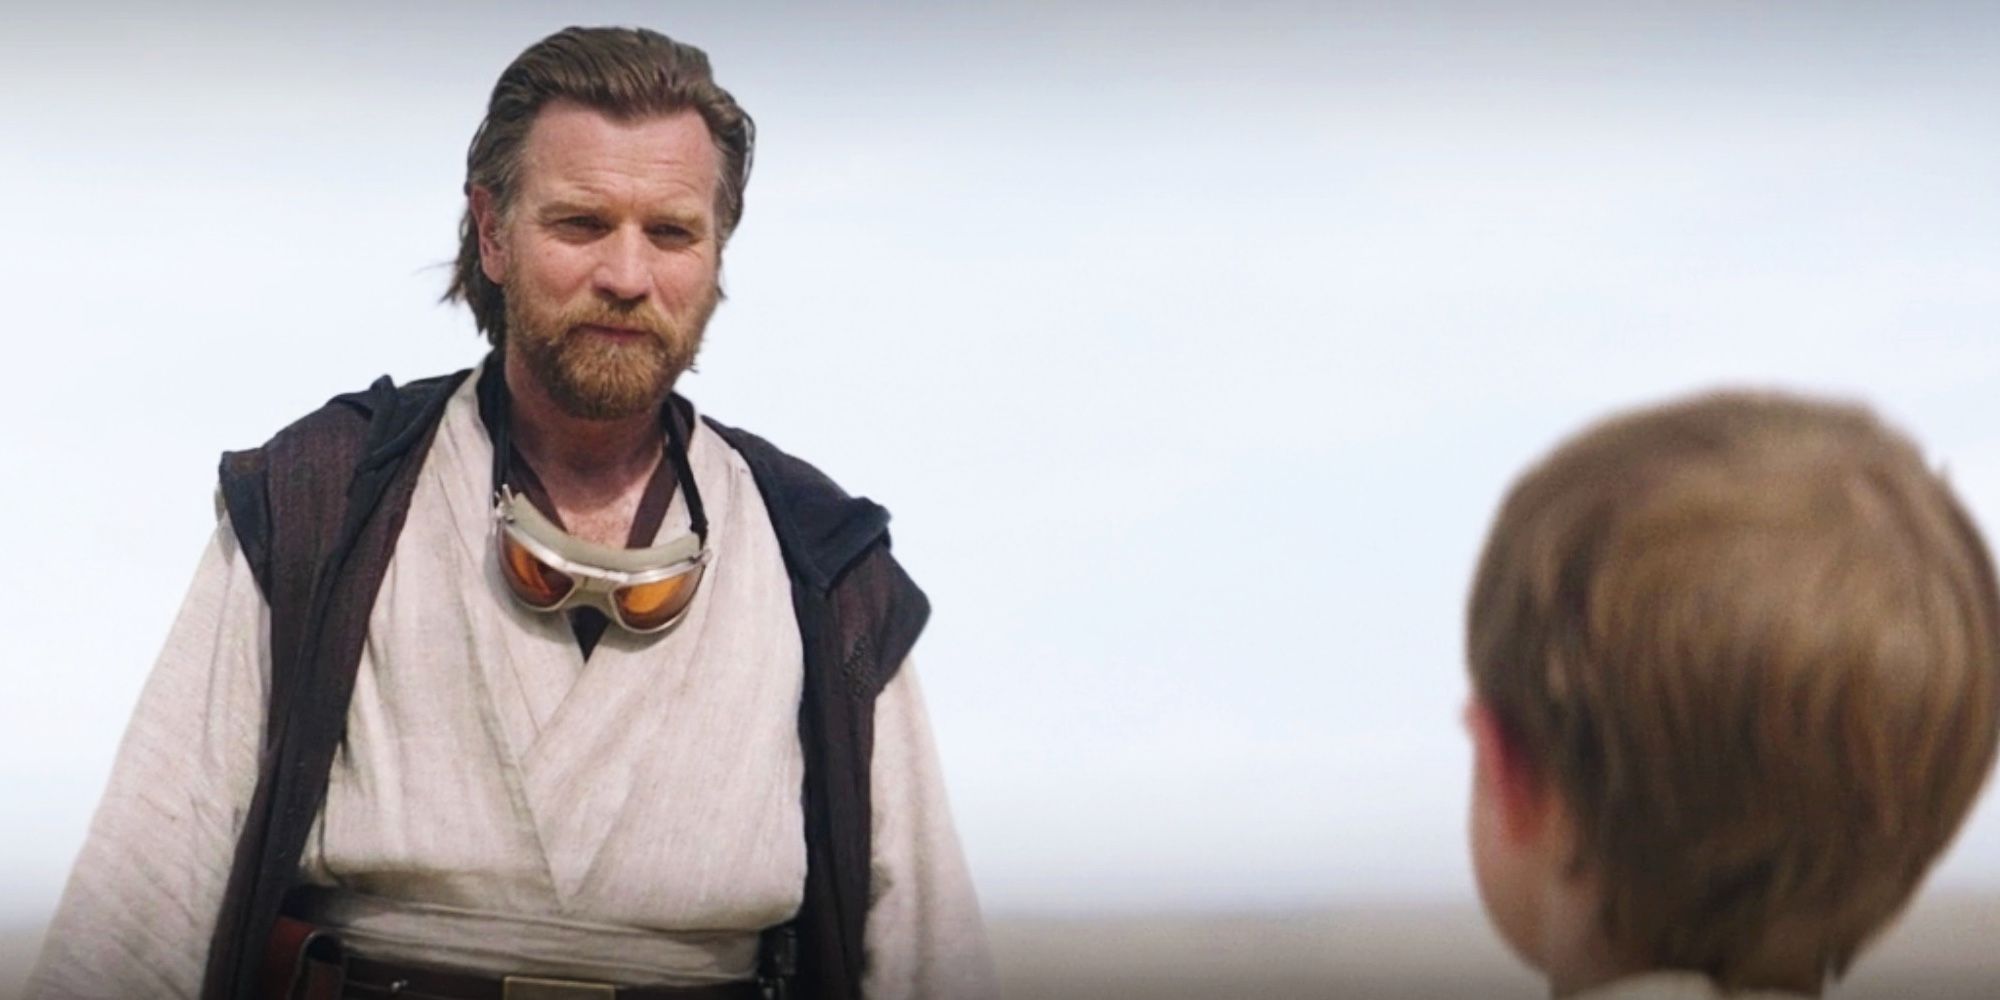 Obi-Wan meets 10-year-old Luke Skywalker in the Obi-Wan Kenobi finale